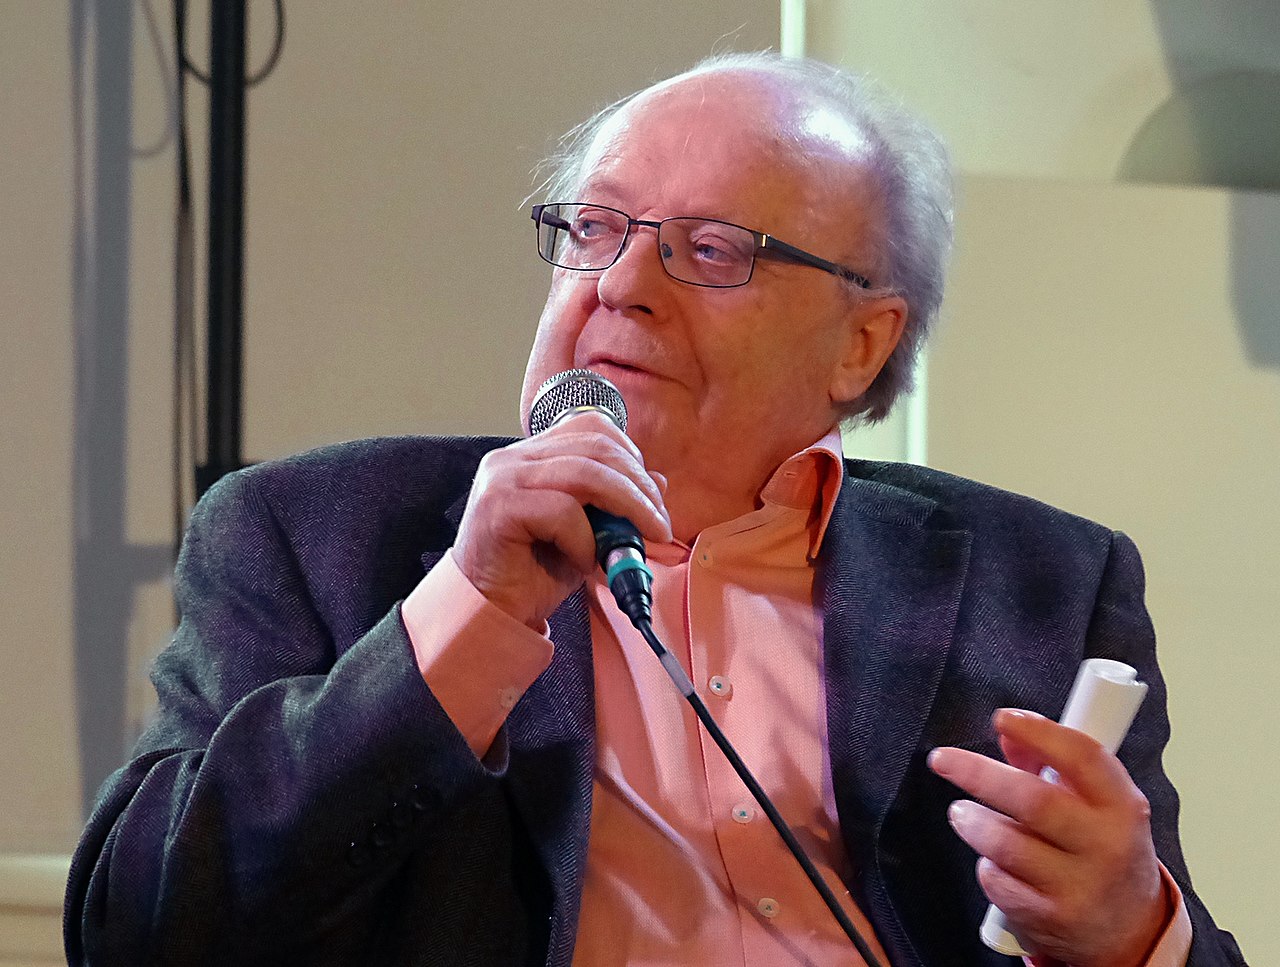 Josef Göhlen spricht während des bumm-Events im Oktober 2015 bei einem Vortrag in ein Mikrofon. Er halt in der rechten Hand ein Mikrofon, in der linken einen Notiz-Zettel.